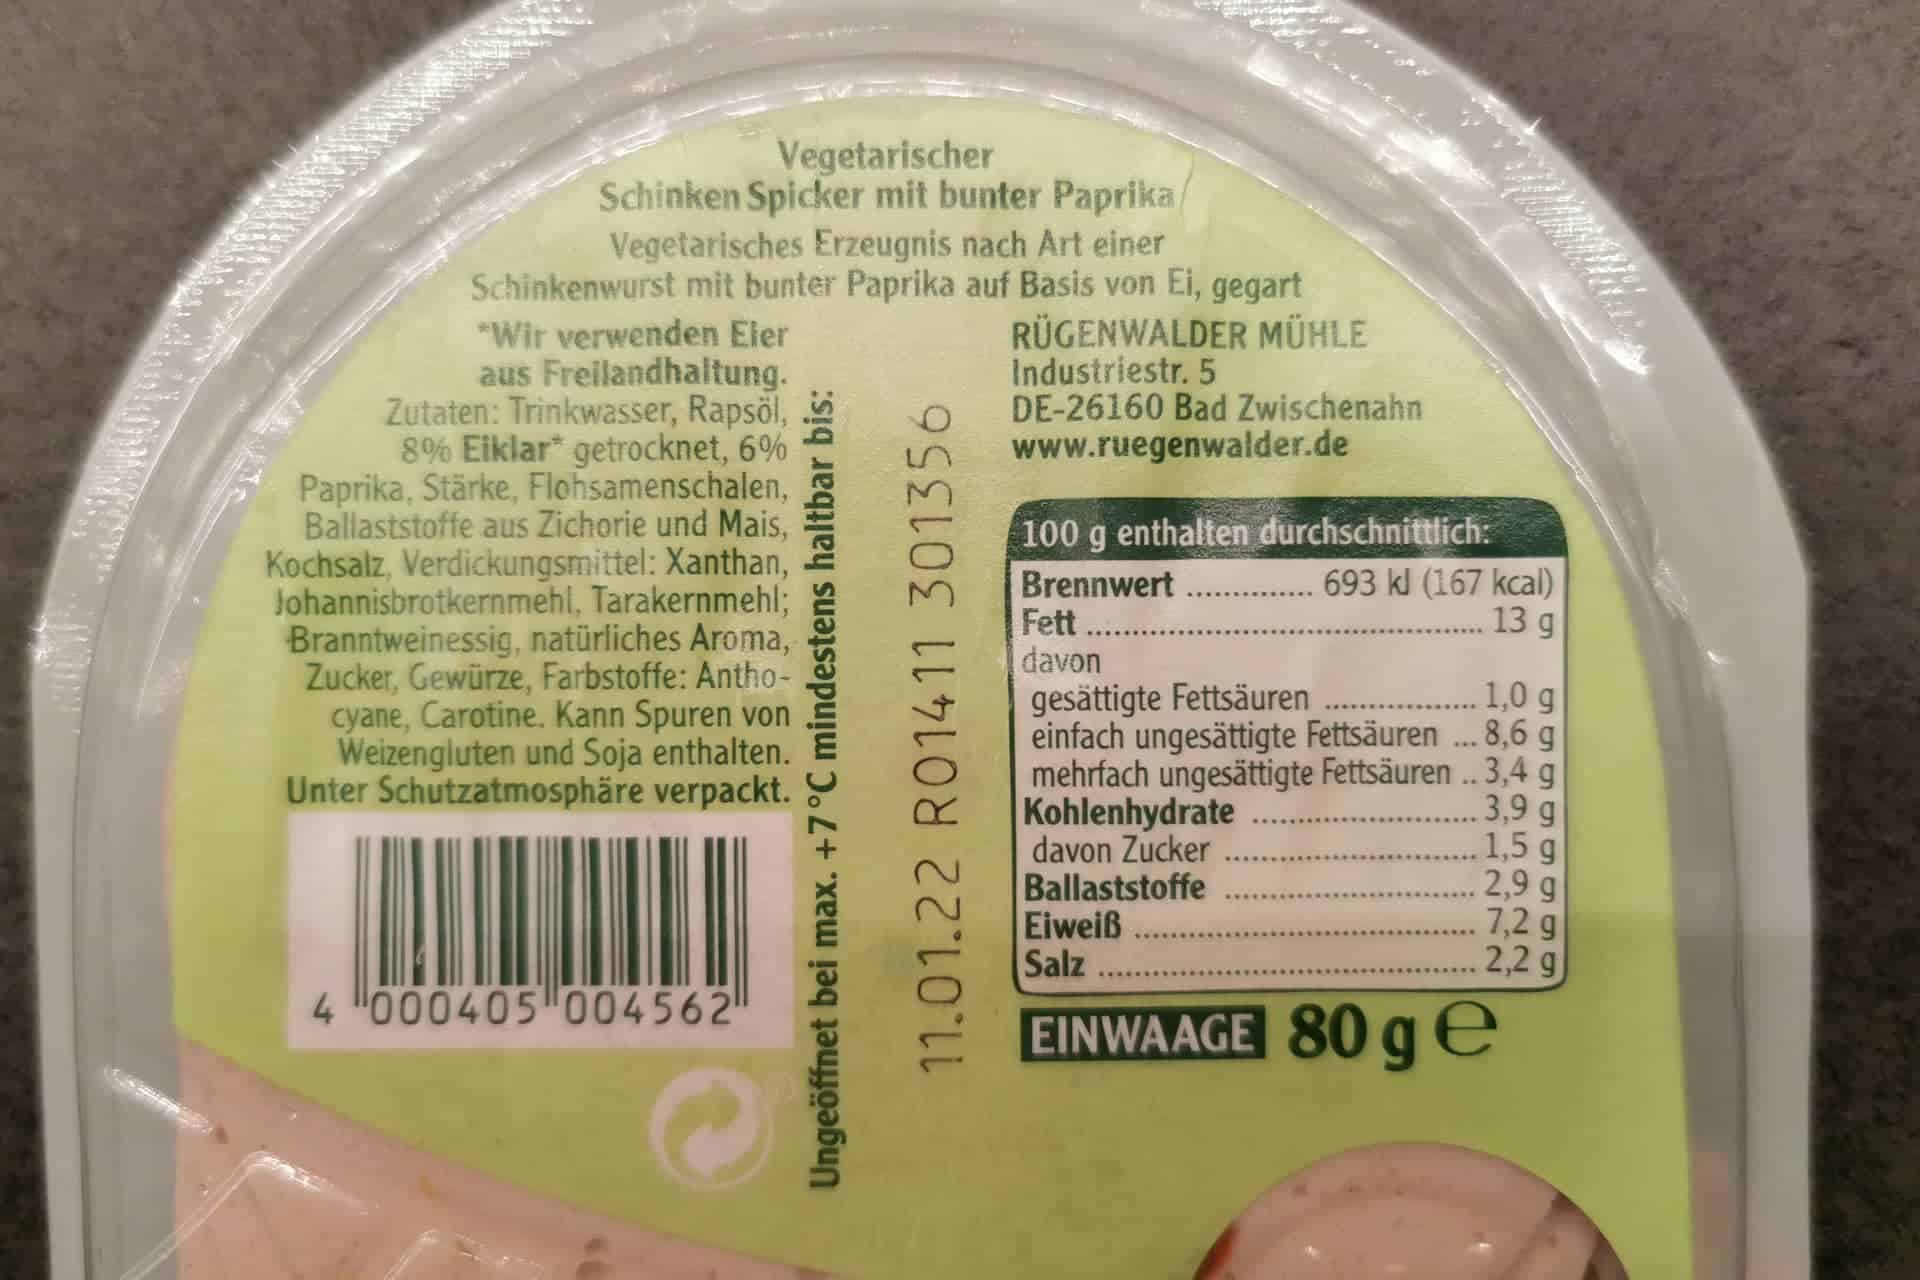 Rügenwalder Mühle: Vegetarischer Schinken Spicker mit bunter Paprika Inhaltsstoffe & Zutaten